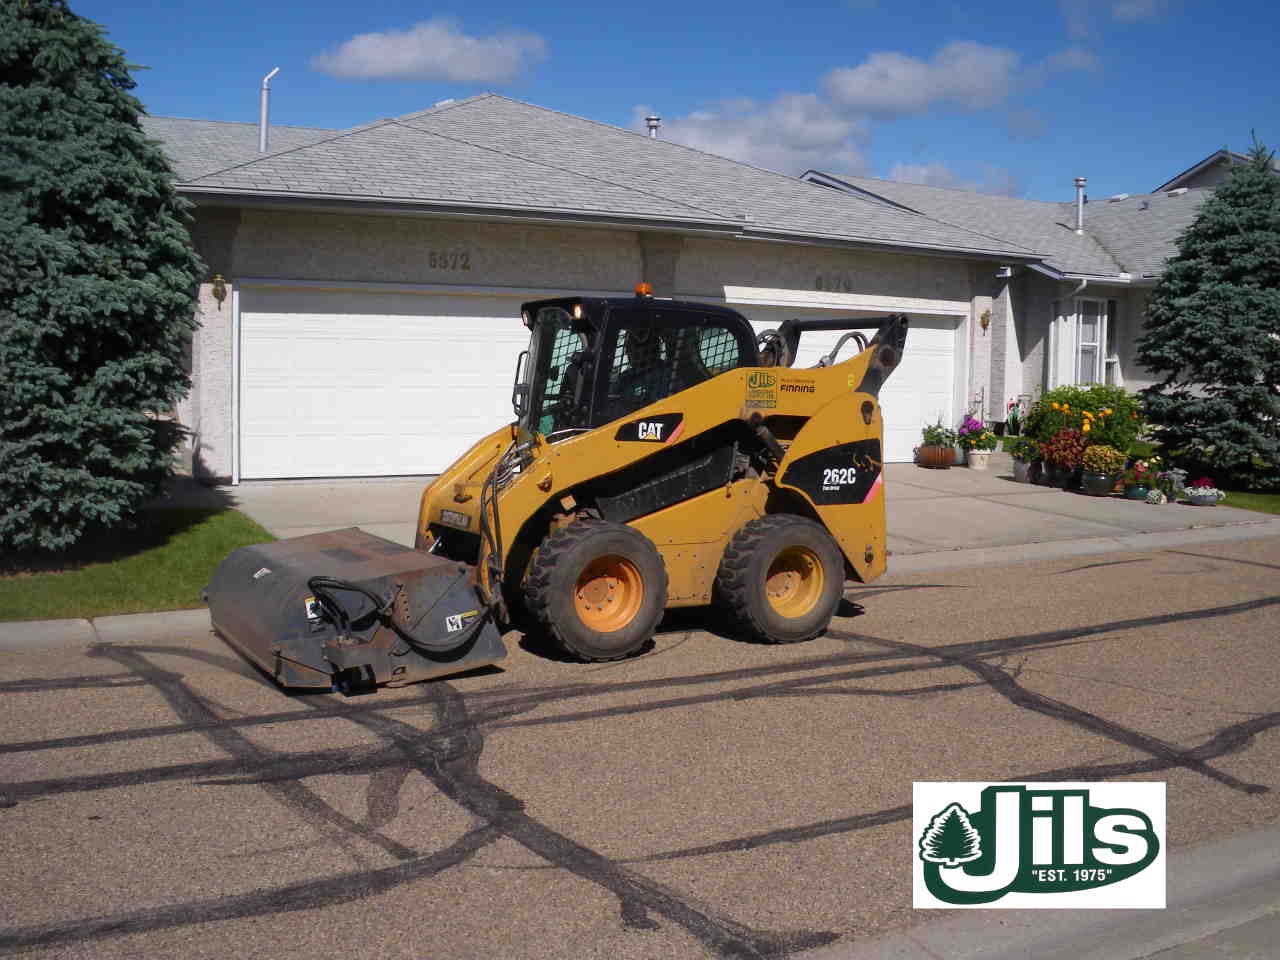 Bobcat sweeping parking lot